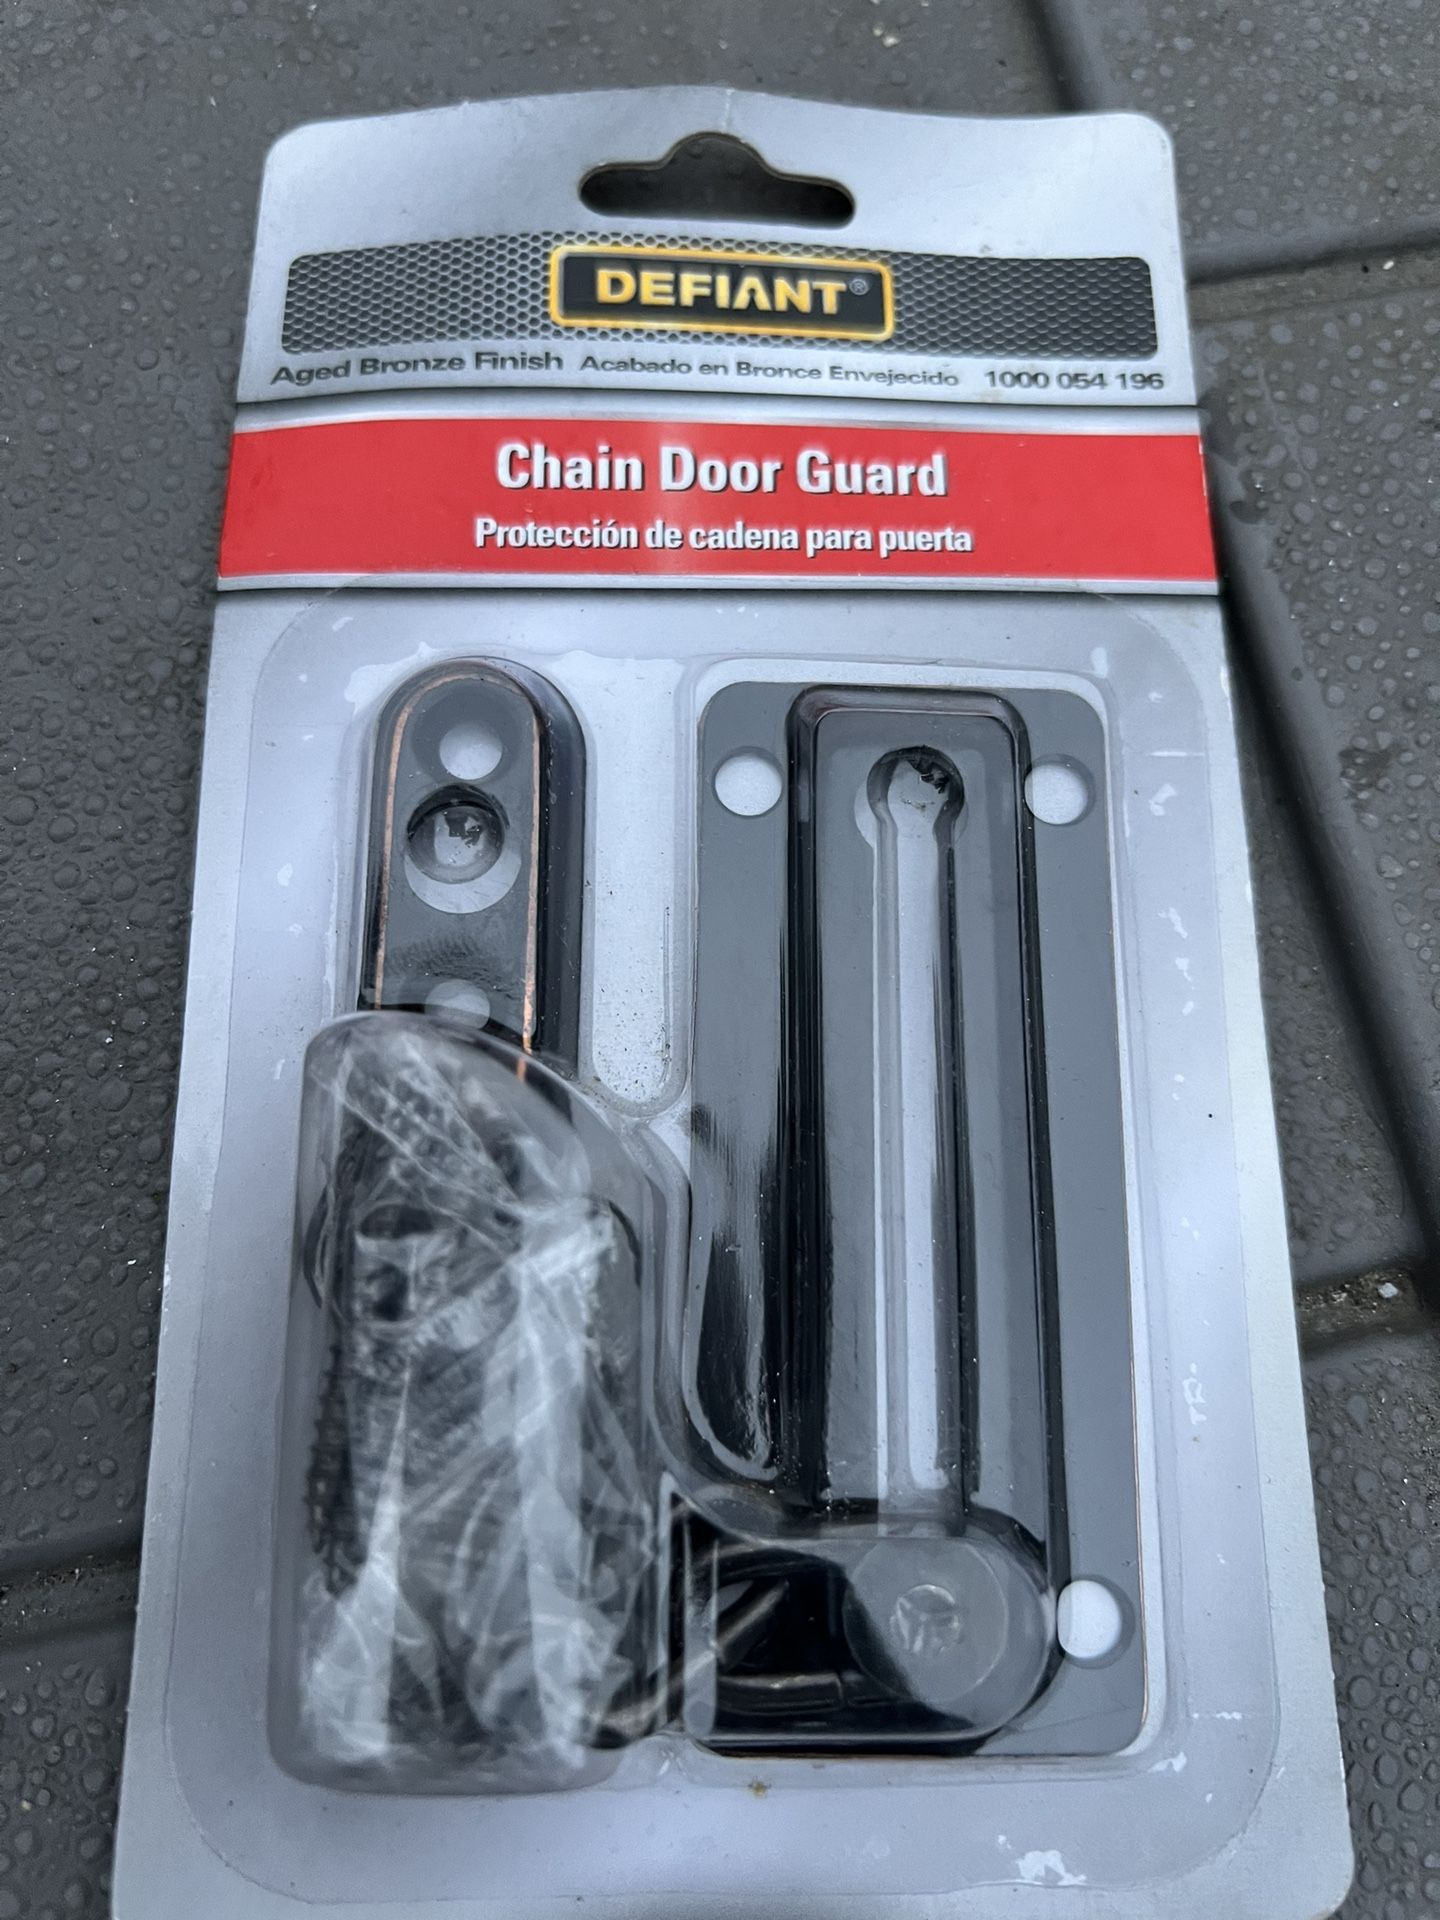 New Chain Door Guard$5